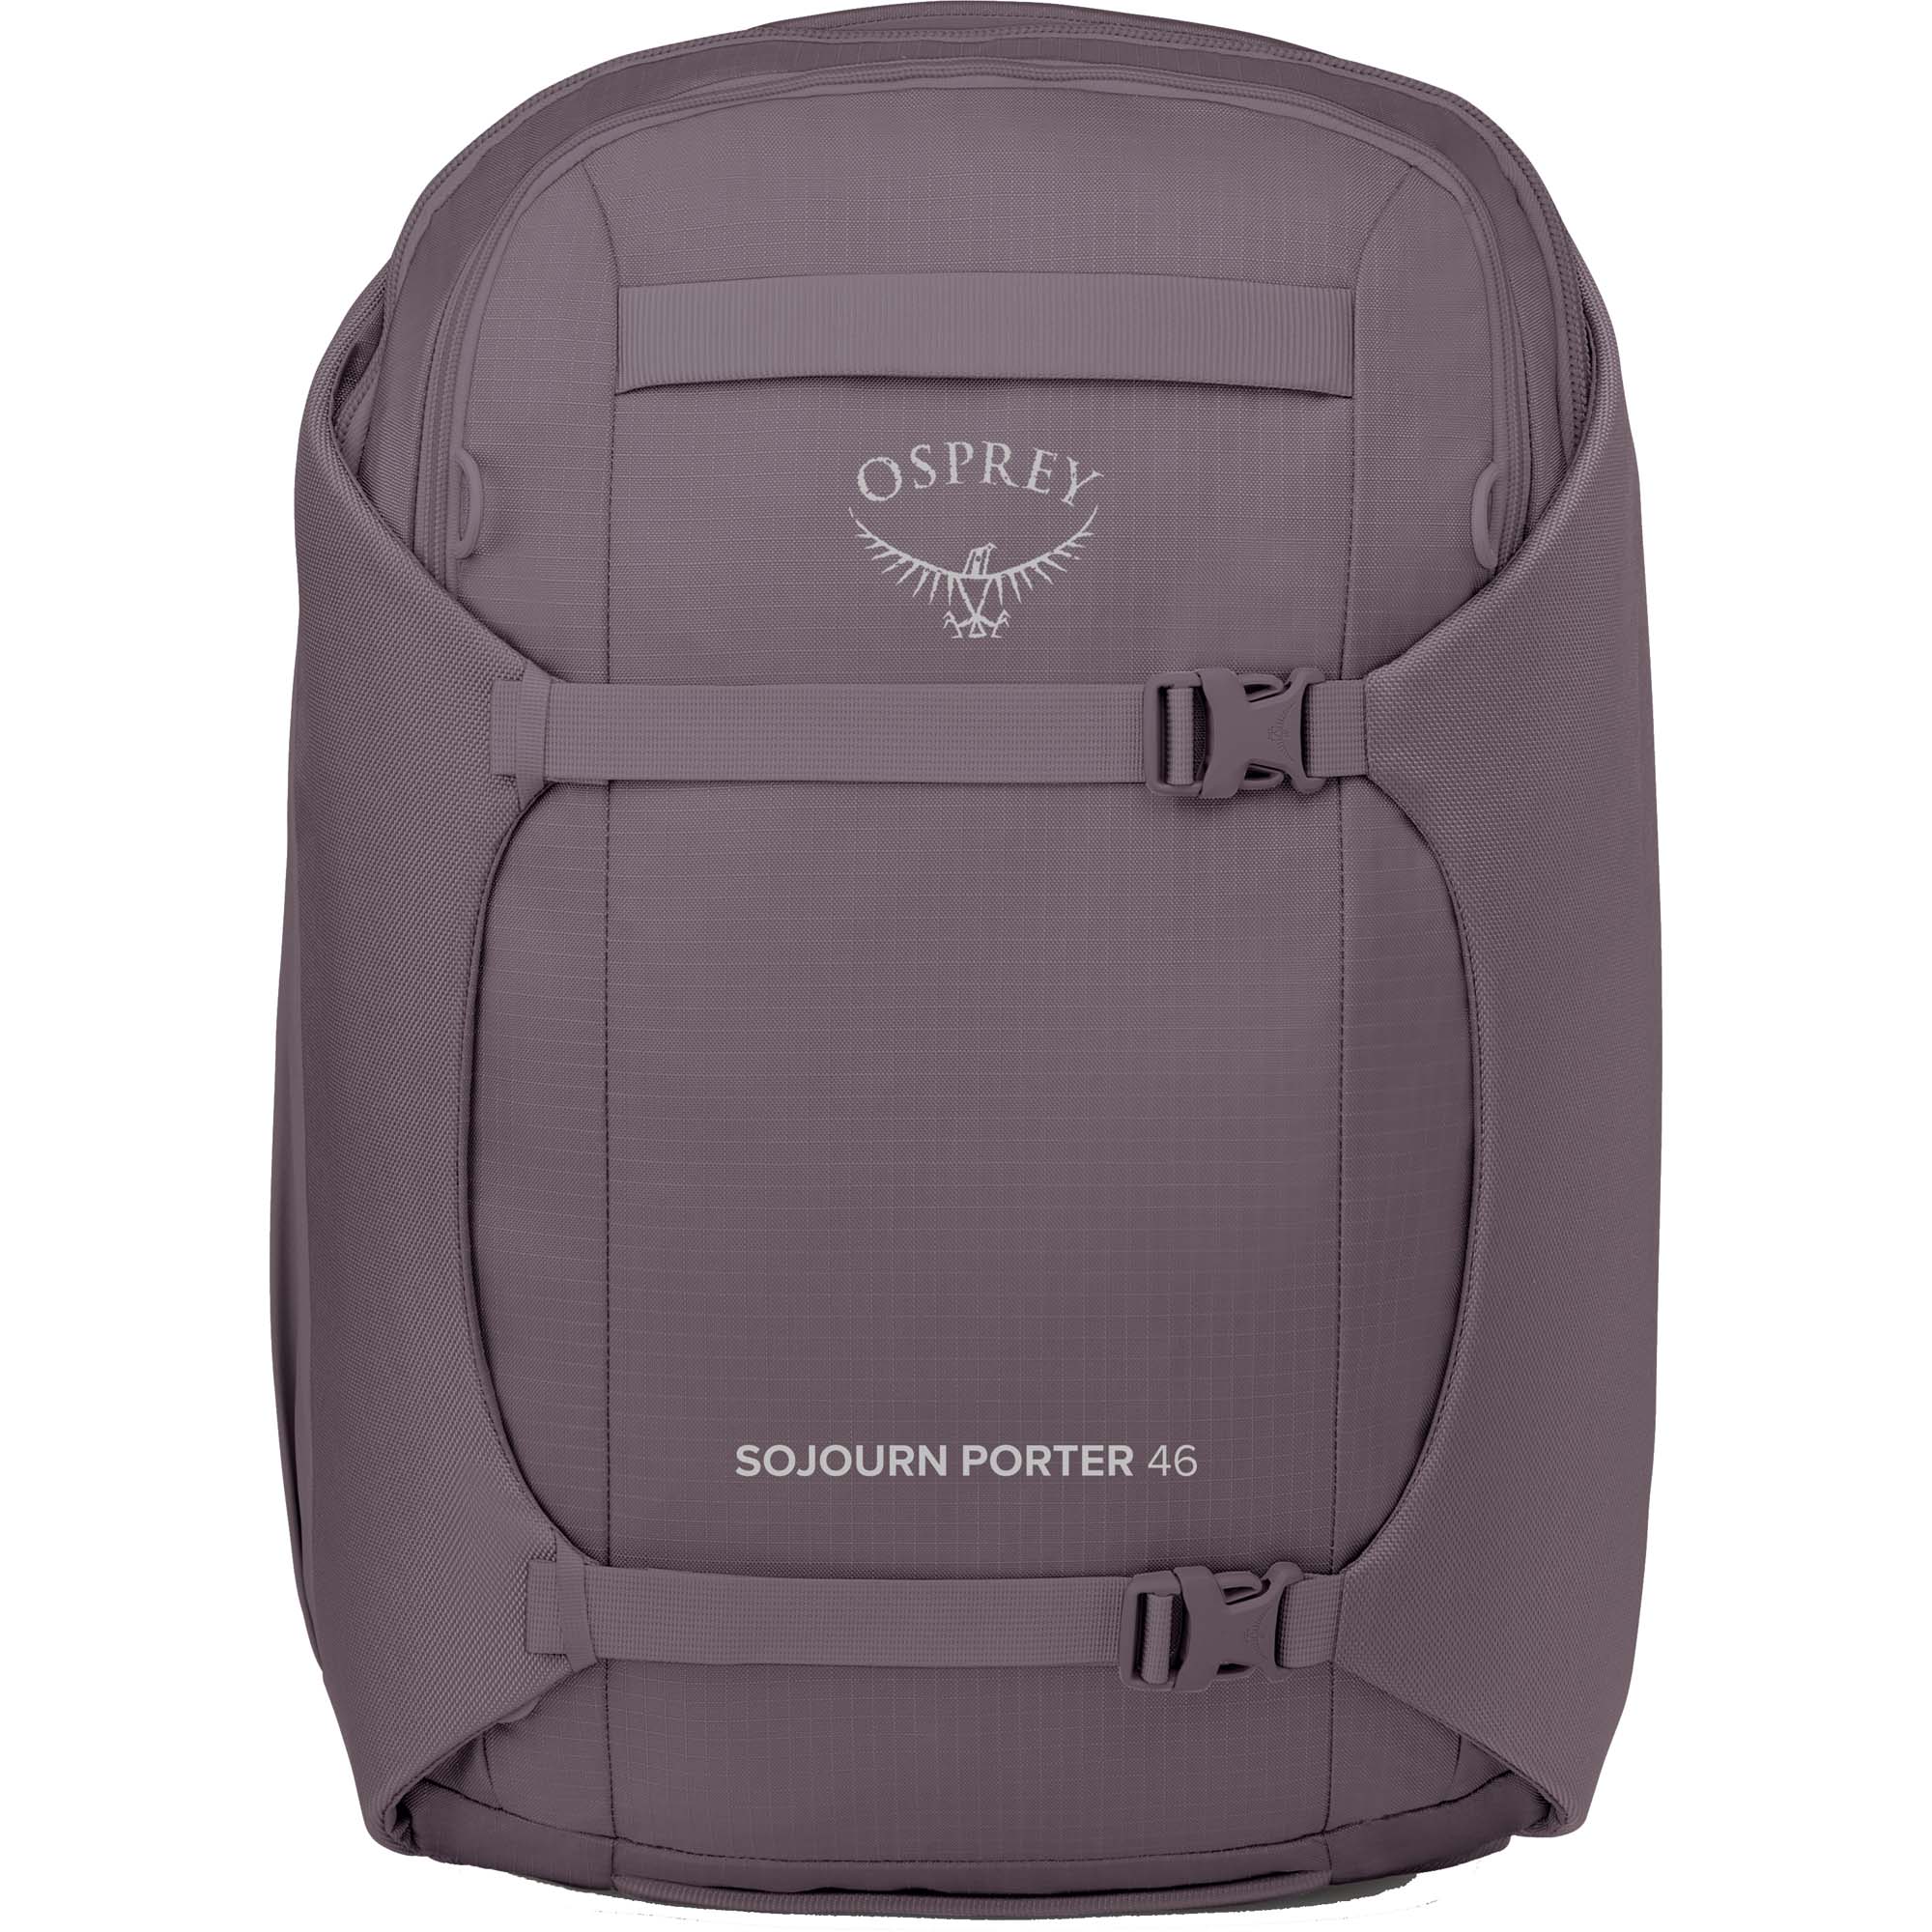 Osprey Sojourn Porter 46 Travel Backpack